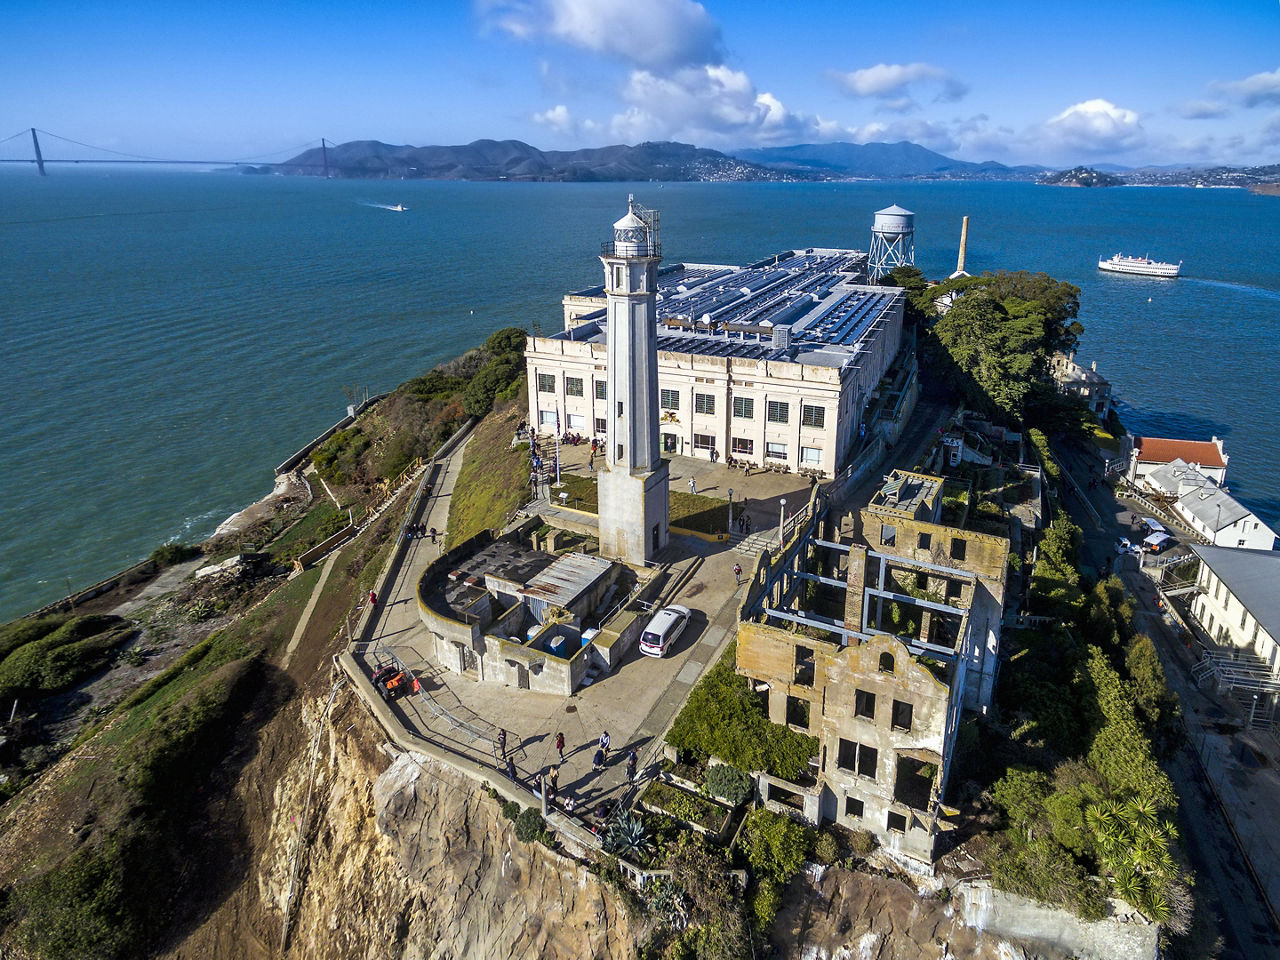 Aerial view of the prison island of Alcatraz in San Francisco, California